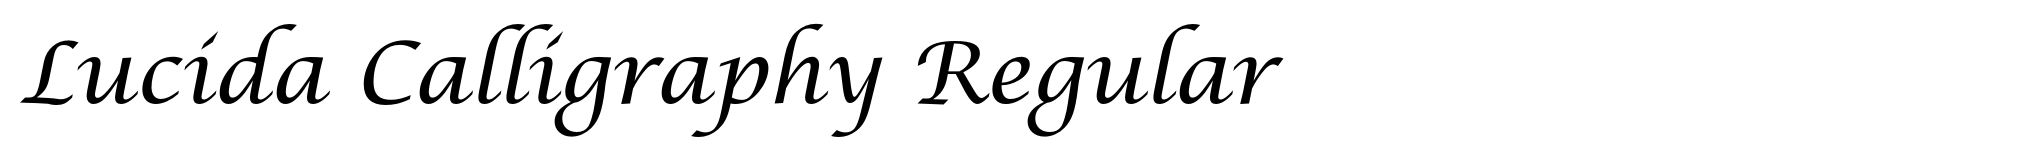 Lucida Calligraphy Regular image